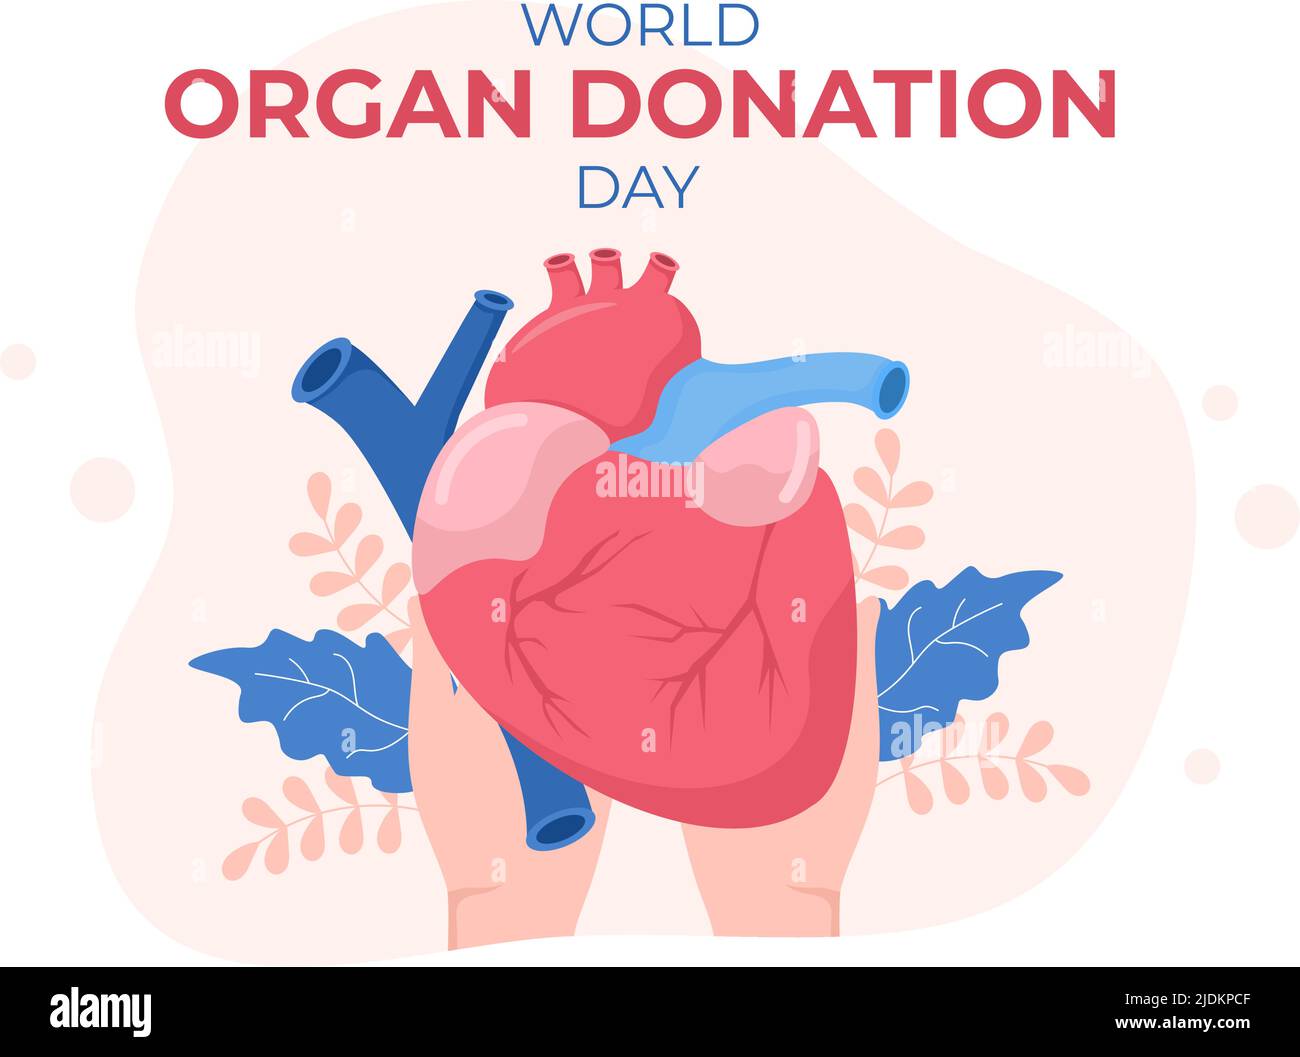 Welttag der Organspende mit Nieren, Herz, Lunge, Augen oder Leber zur Transplantation, Rettung von Leben und Gesundheitsversorgung in flacher Cartoon-Illustration Stock Vektor